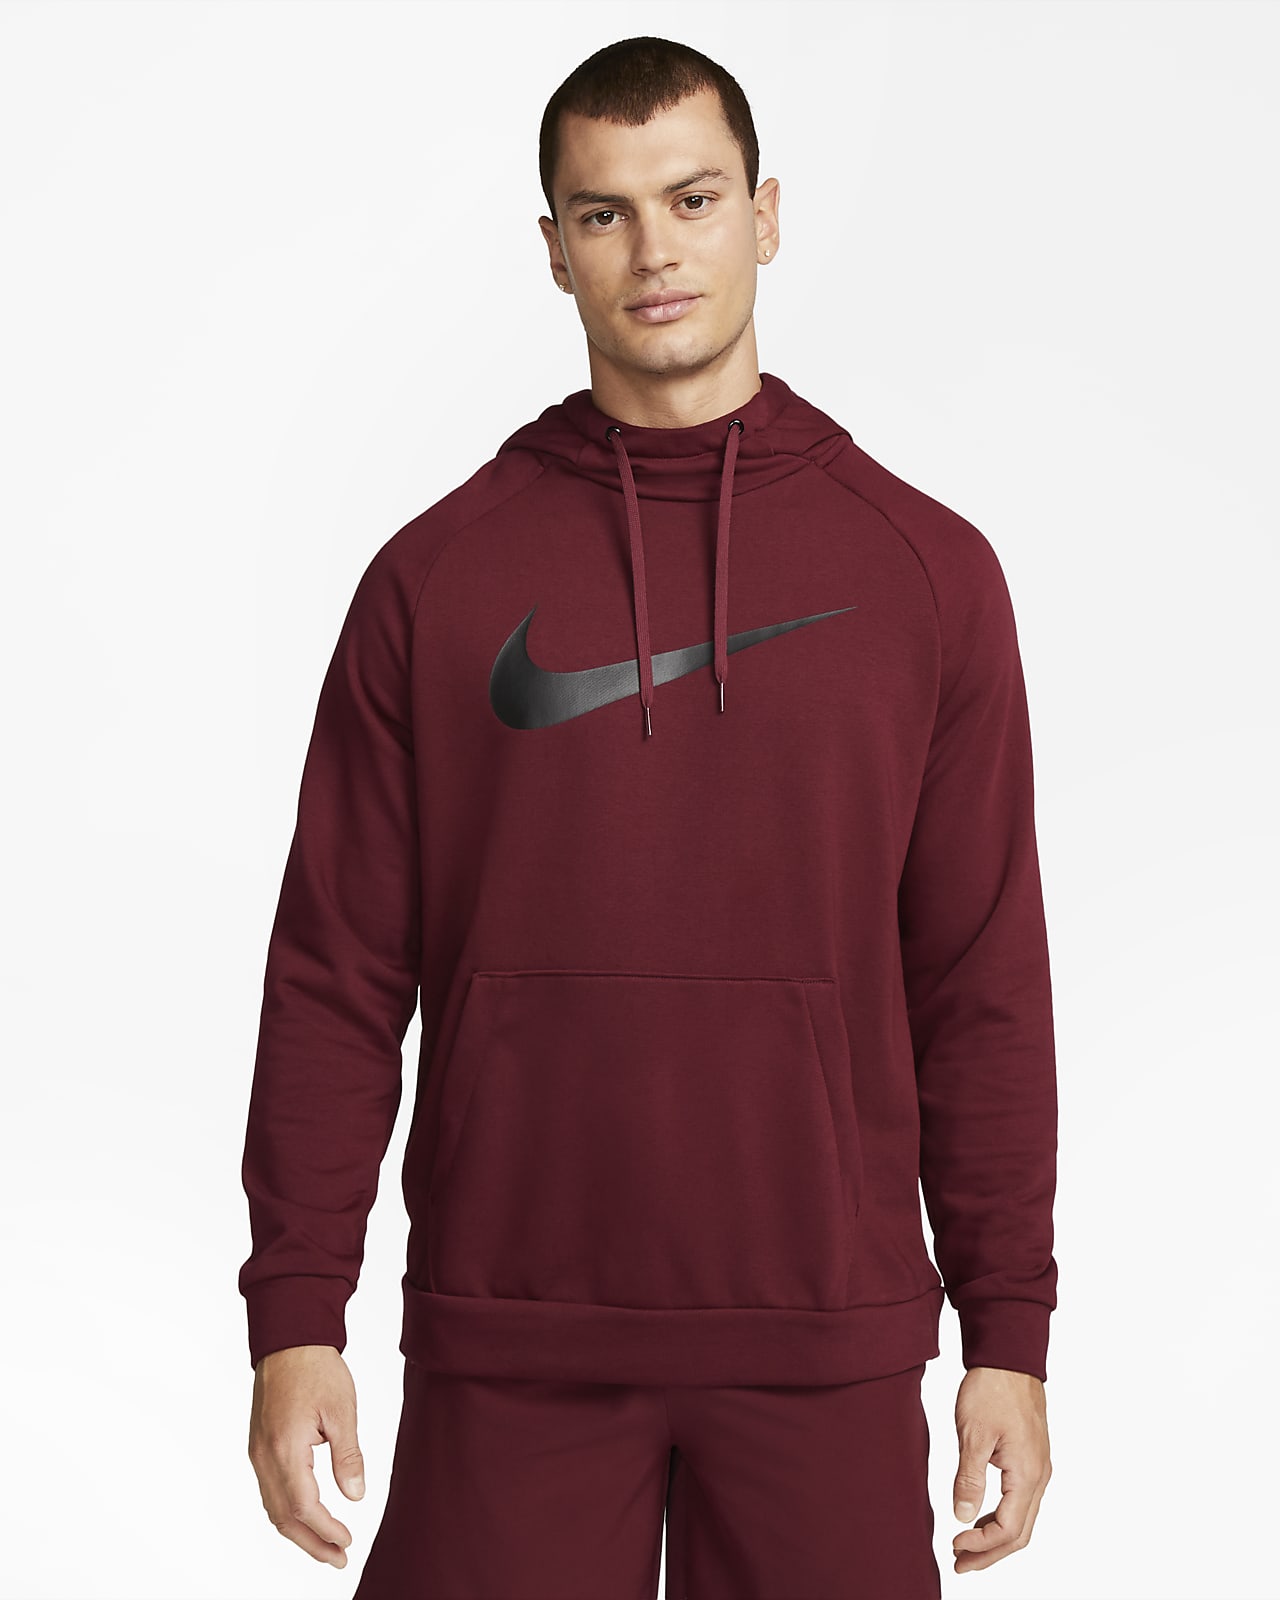 Nike Dri-FIT Kapüşonlu Erkek Antrenman Sweatshirt'ü